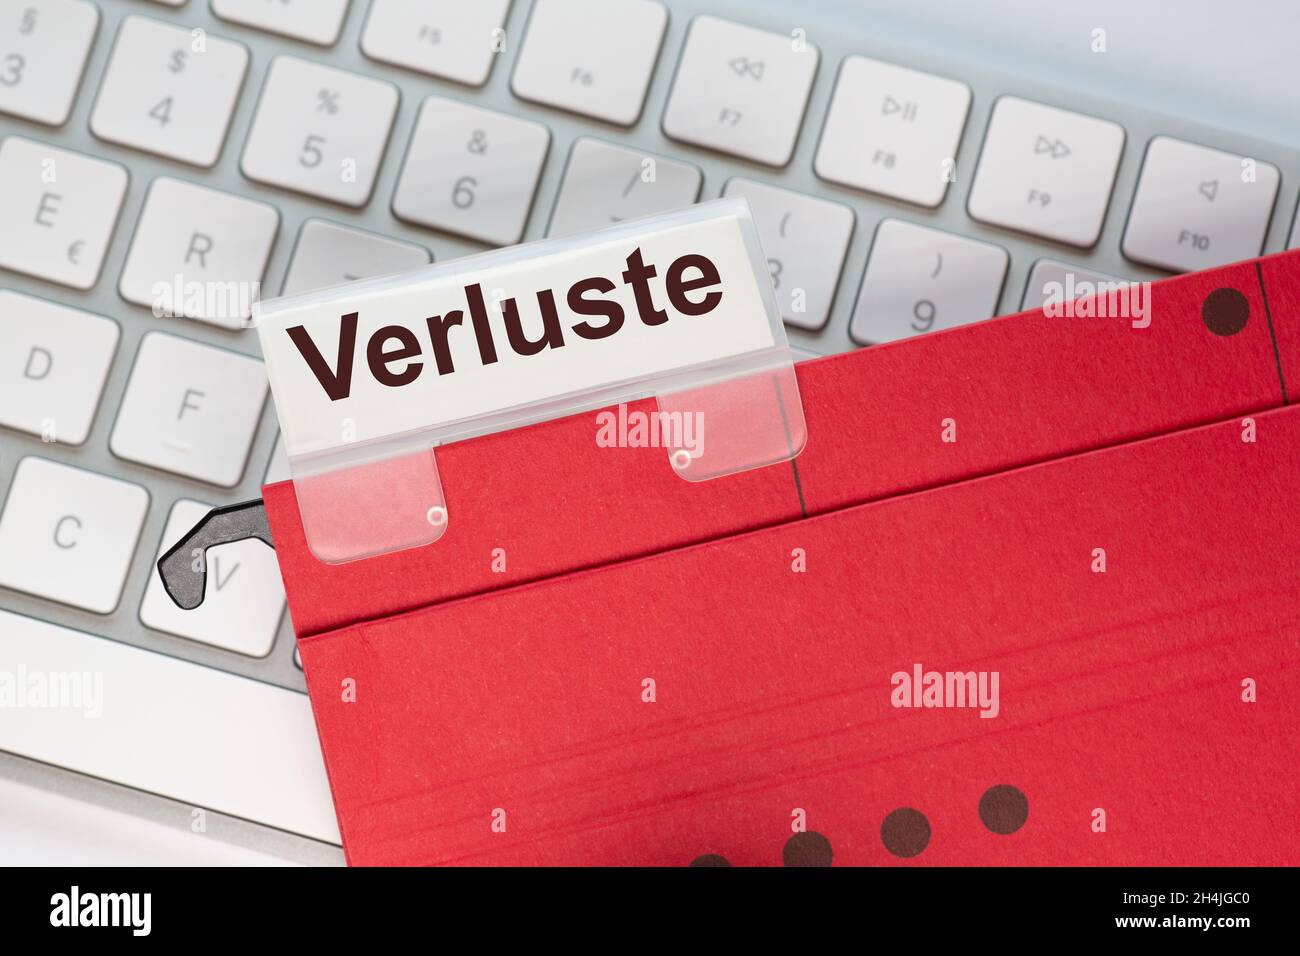 La parola tedesca per le perdite può essere visualizzata sull'etichetta di una cartella appesa in rosso. La cartella di visualizzazione si trova sulla tastiera di un computer. Foto Stock